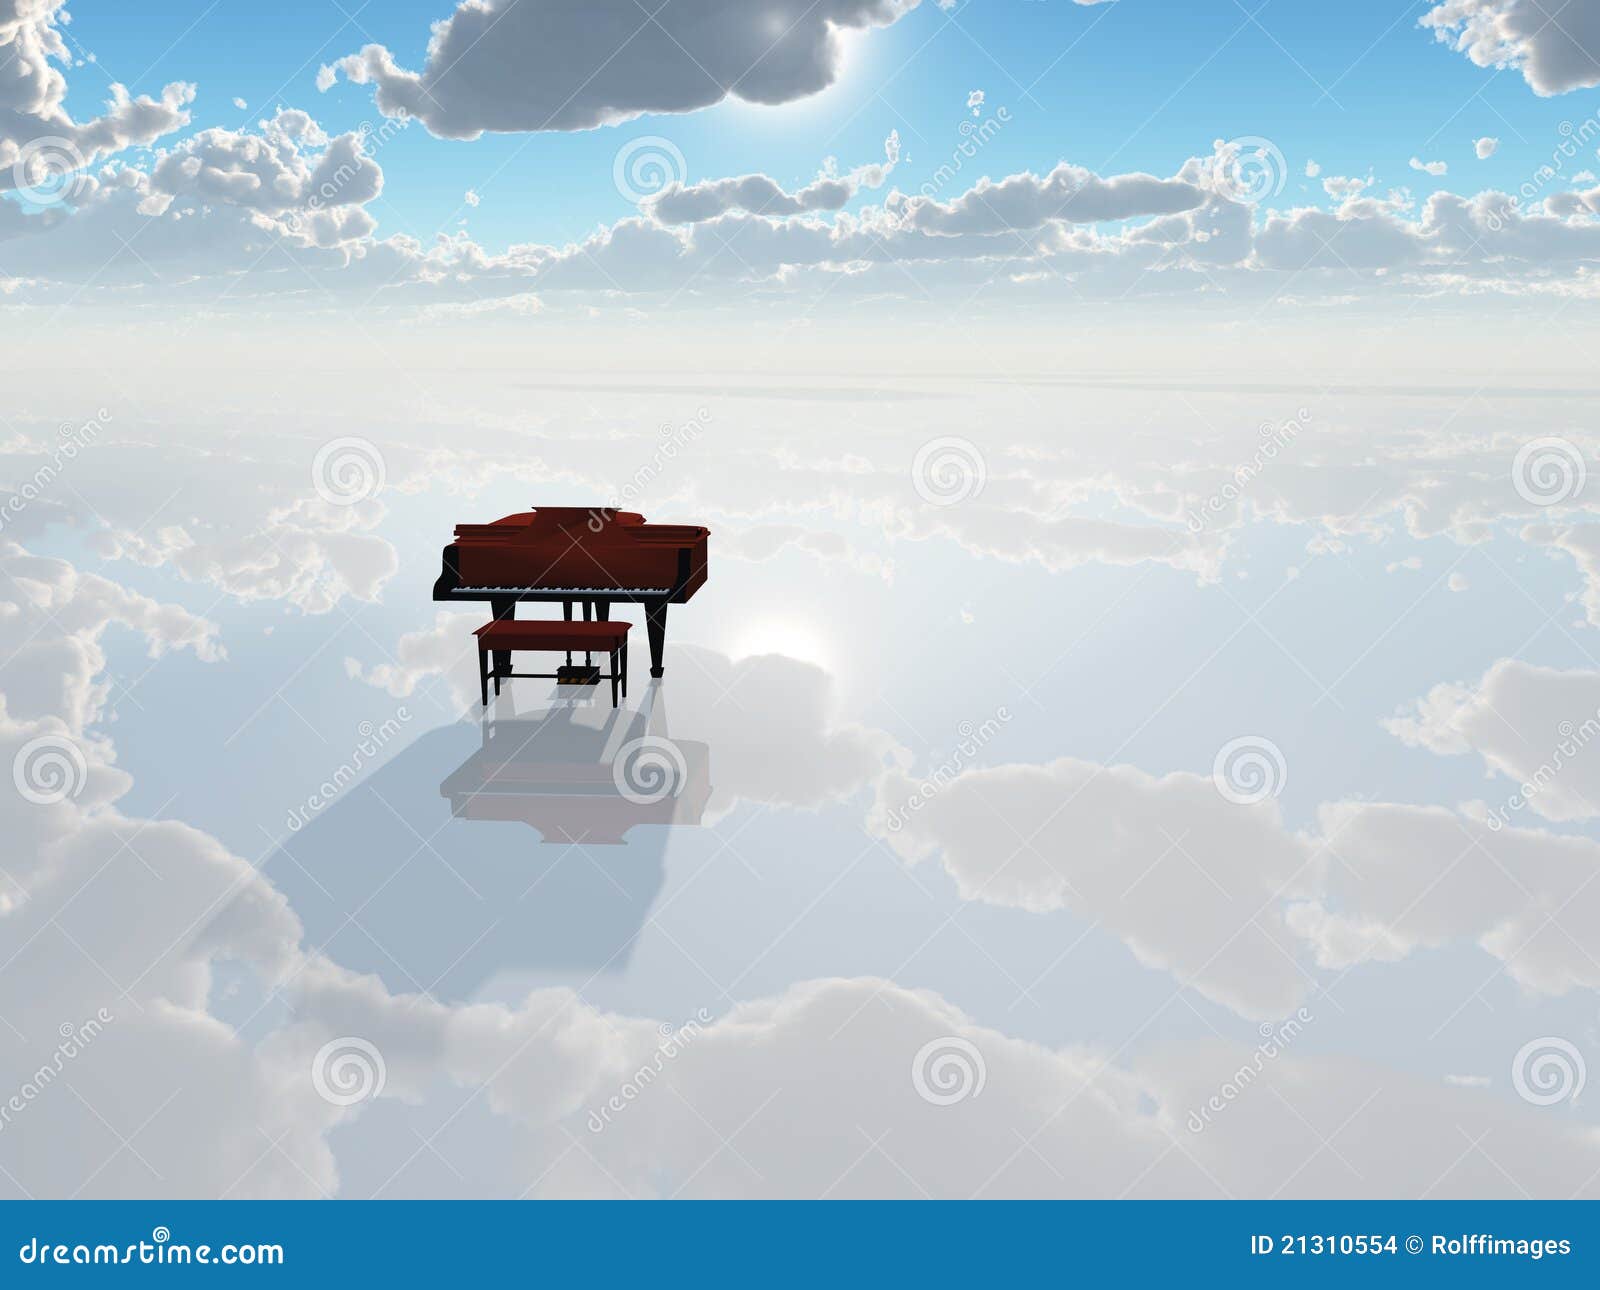 piano in stark white landscape